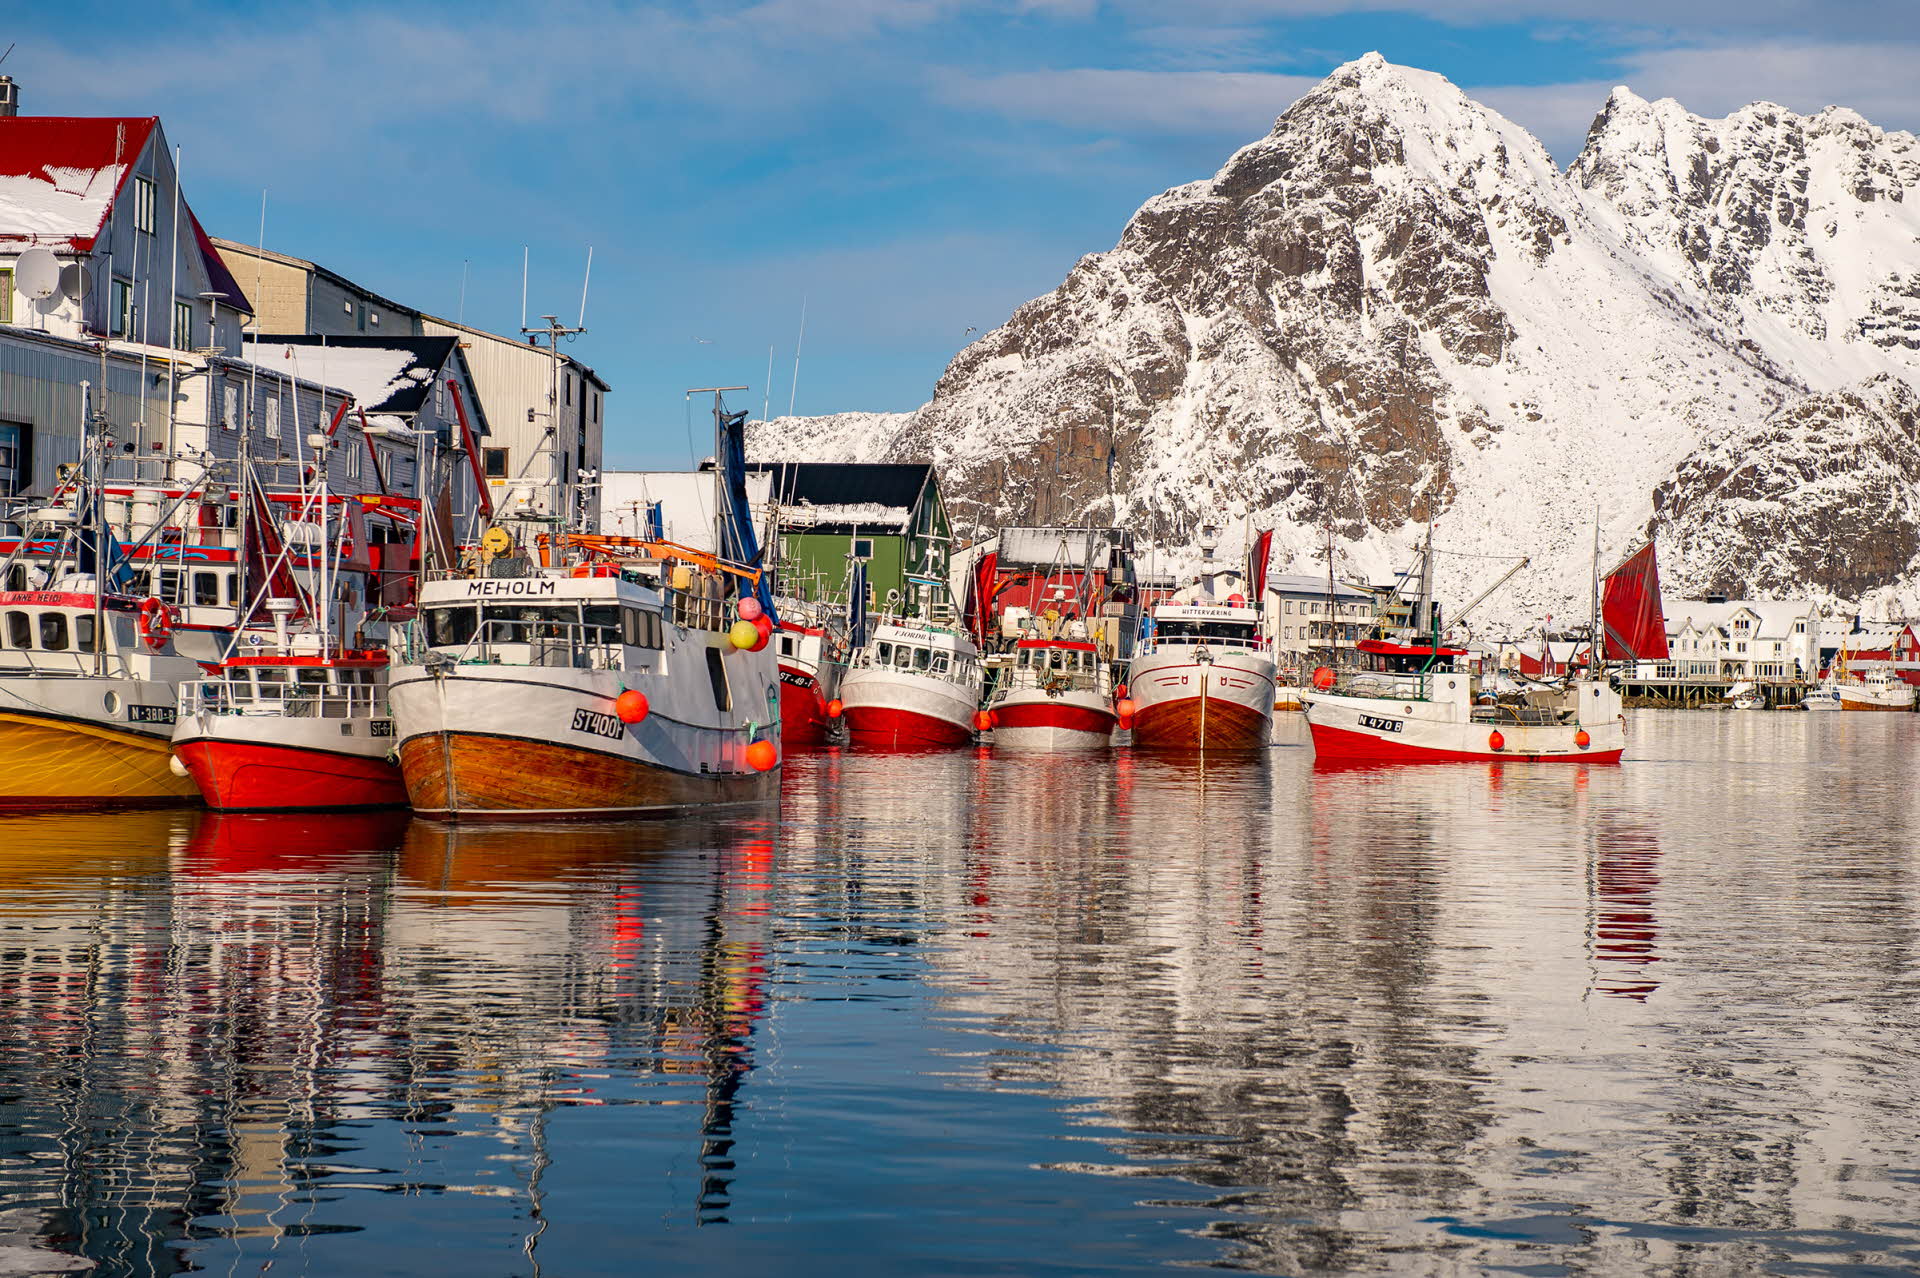 Des bateaux de pêche amarrés au quai d’un village des îles Lofoten, avec des montagnes enneigées à l’arrière-plan.